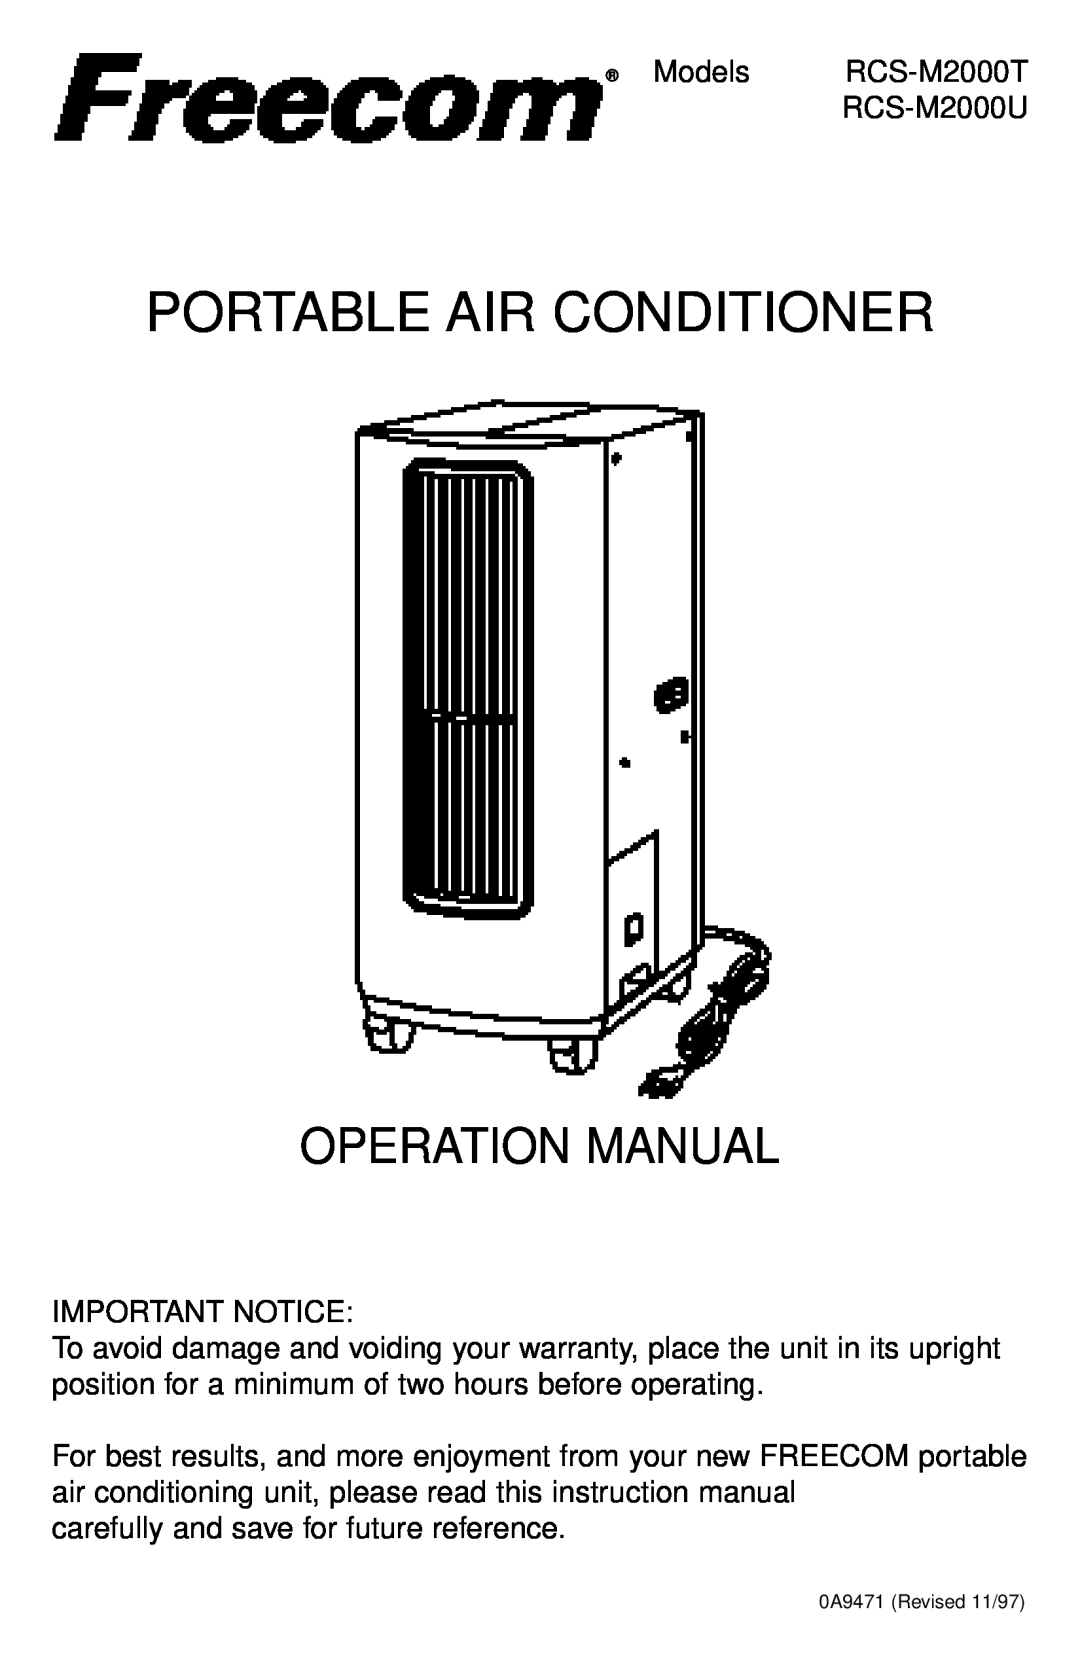 Freecom Technologies RCS-M2000T operation manual Models, RCS-M2000U, Important Notice, Portable Air Conditioner 